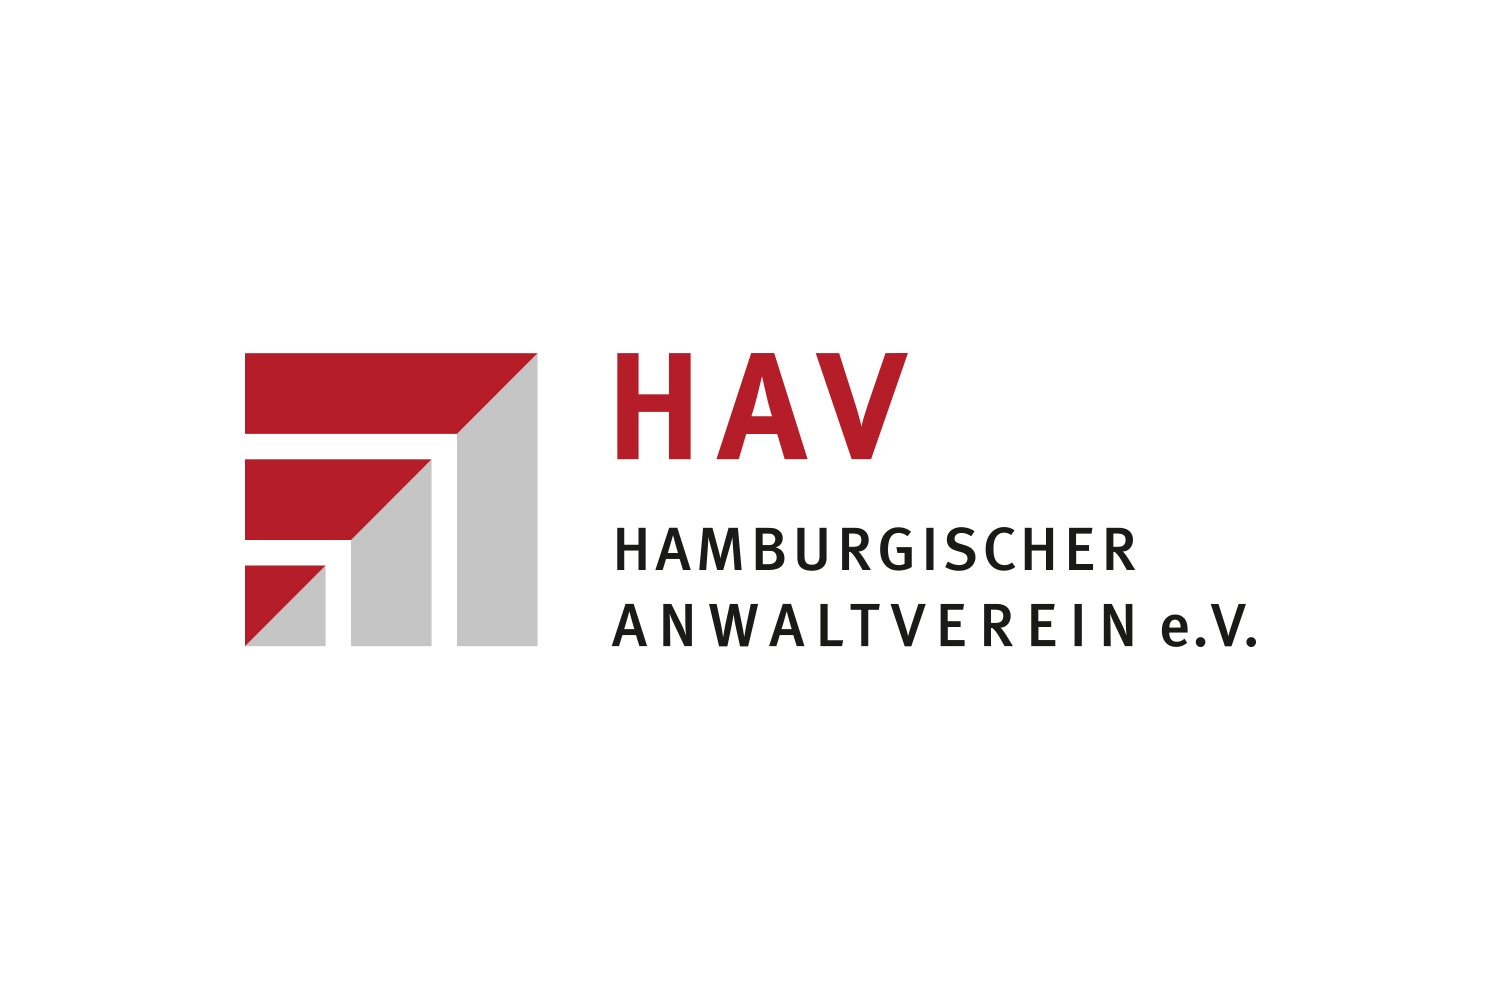 Hamburgischer Anwaltsverein